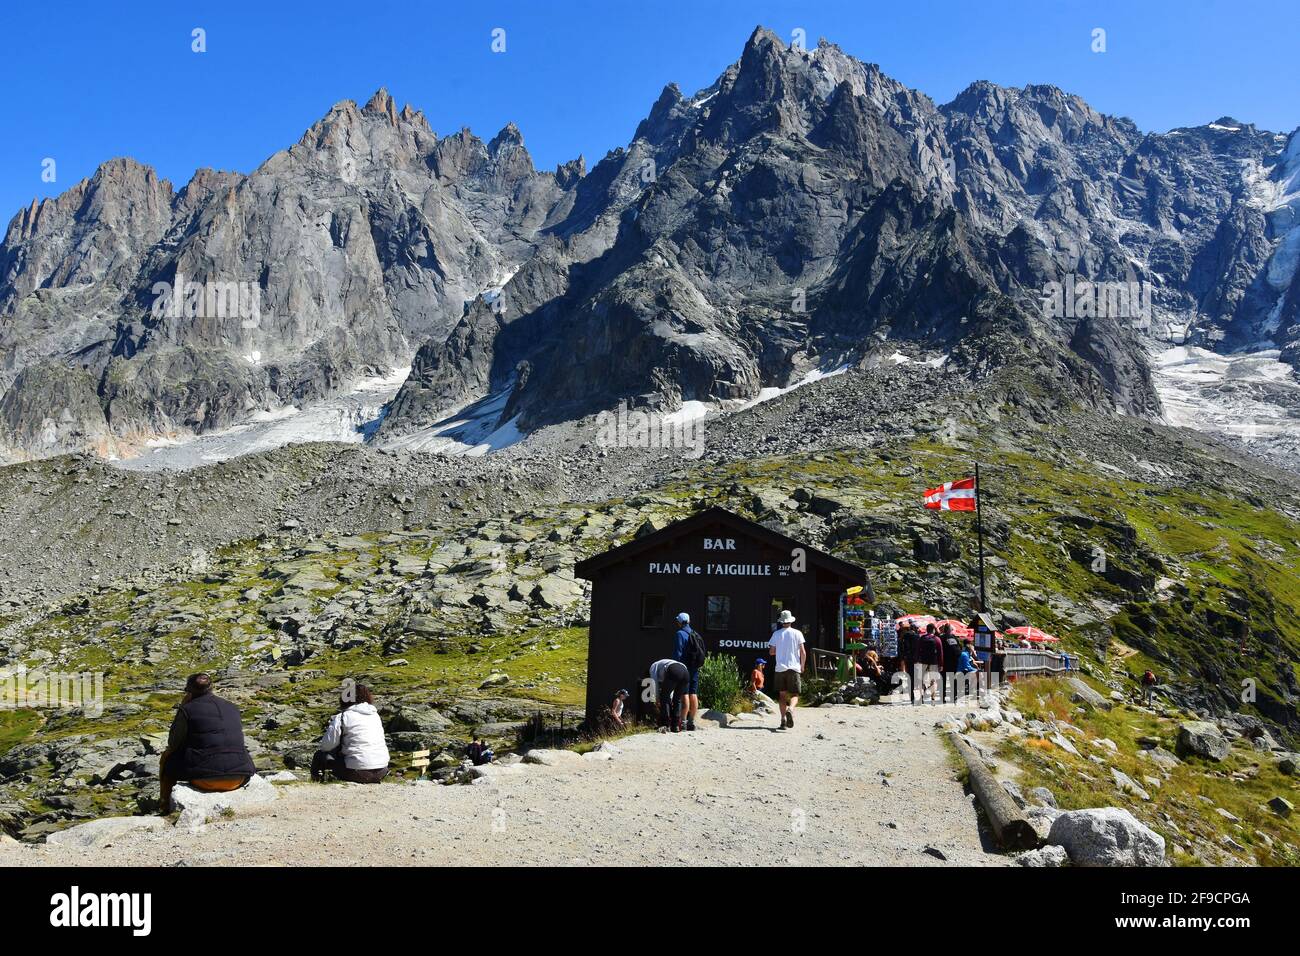 Chamonix, France - August 23, 2019. Chalet at Plan de l'Aiguille and Aiguille du Midi summit, Chamonix, Mont Blanc, Haute-Savoie, France Stock Photo